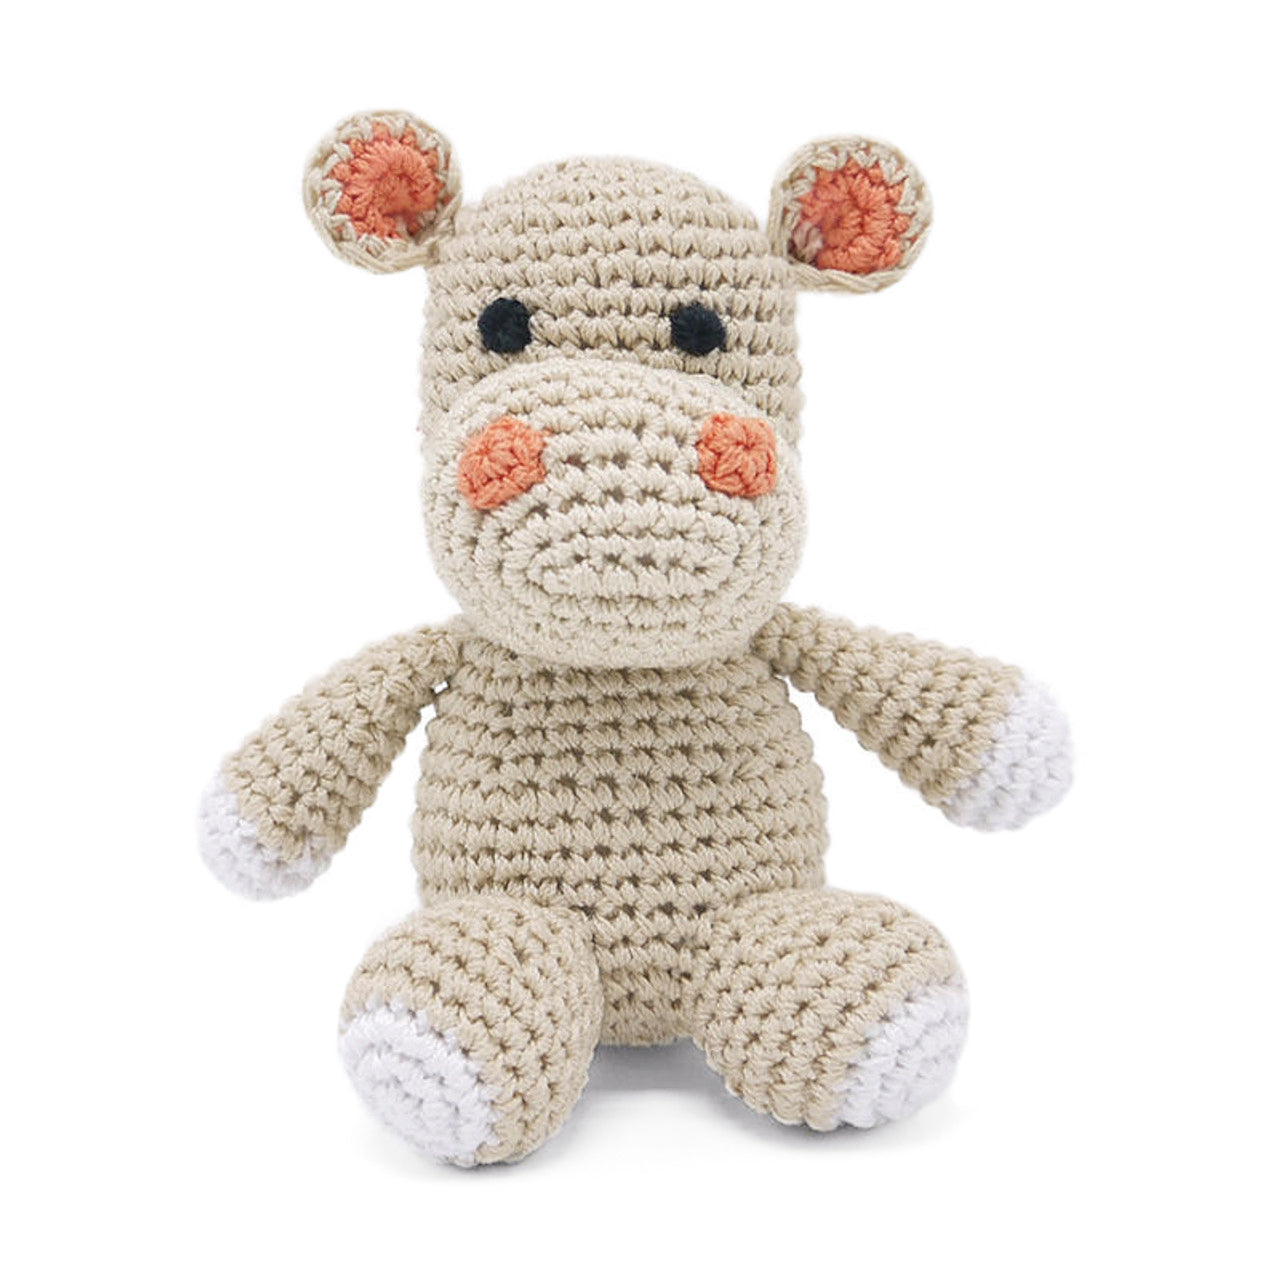 Crochet Hippo Dog Toy